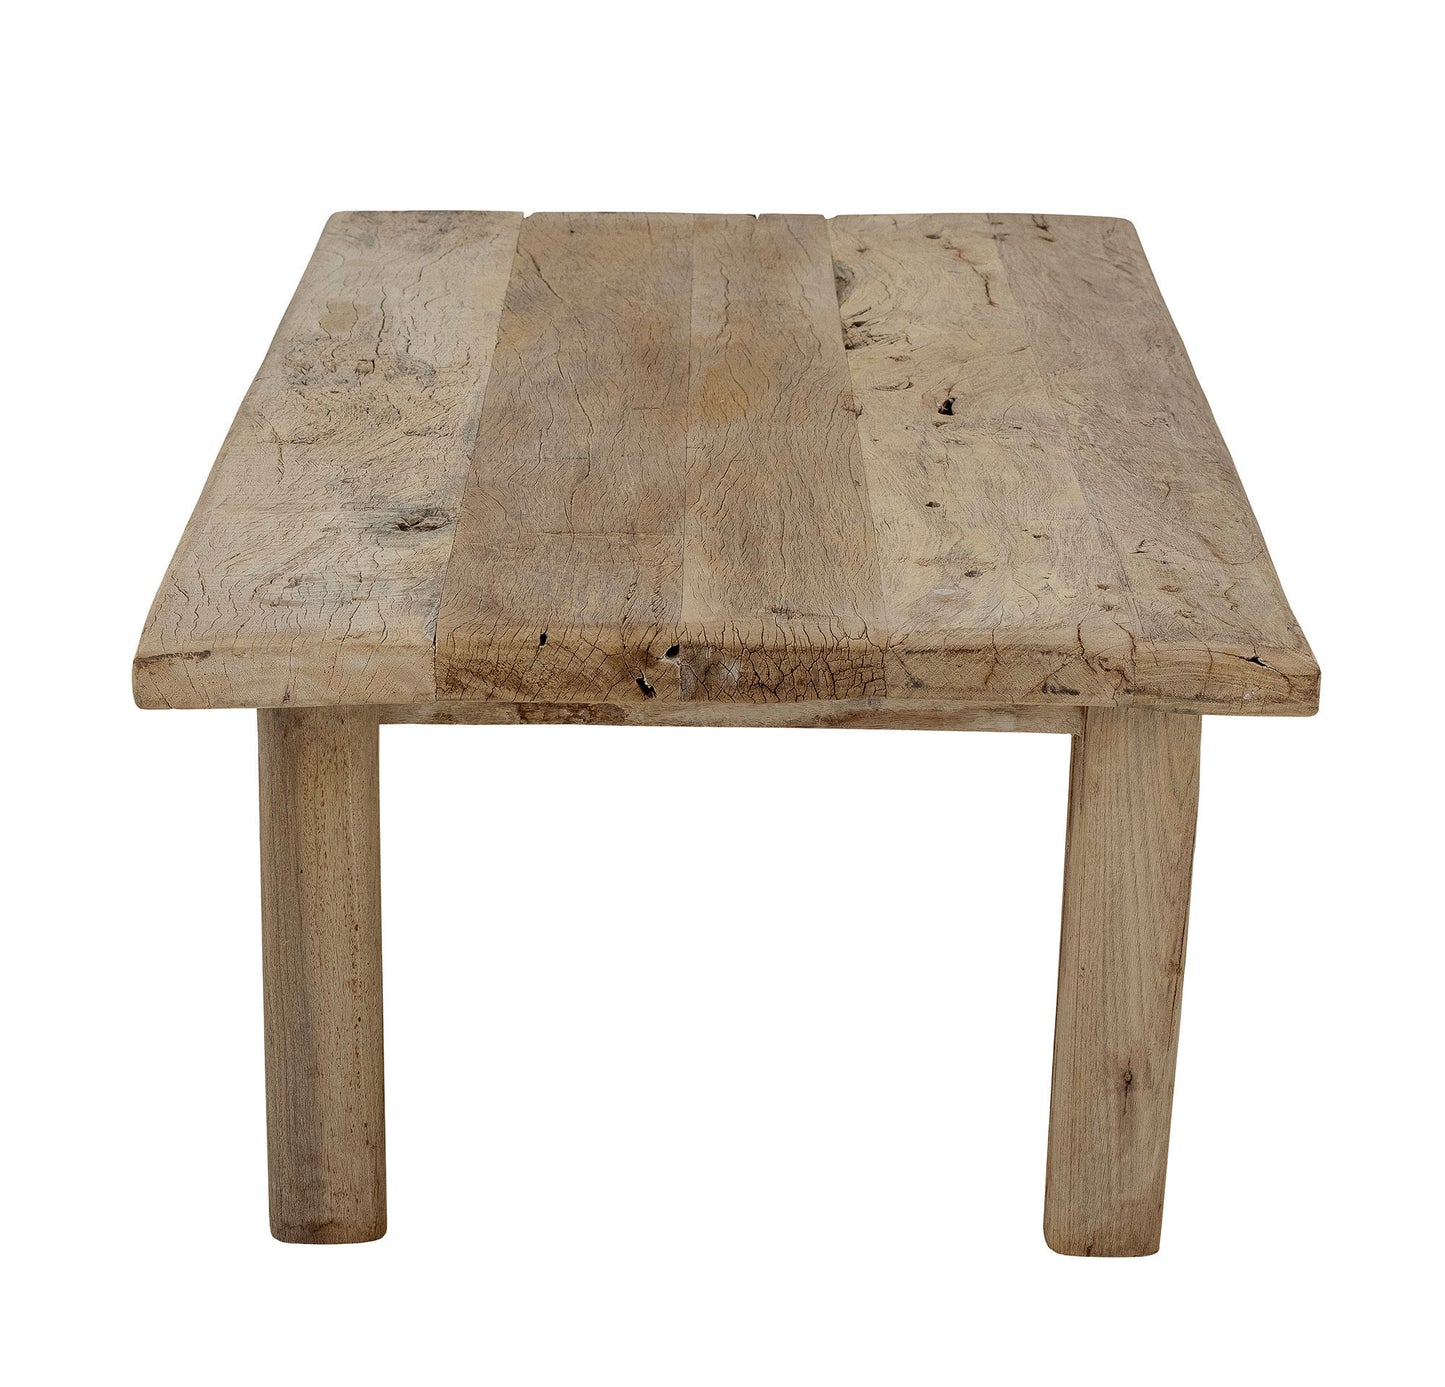 Table basse rustique en bois recyclé - RIB